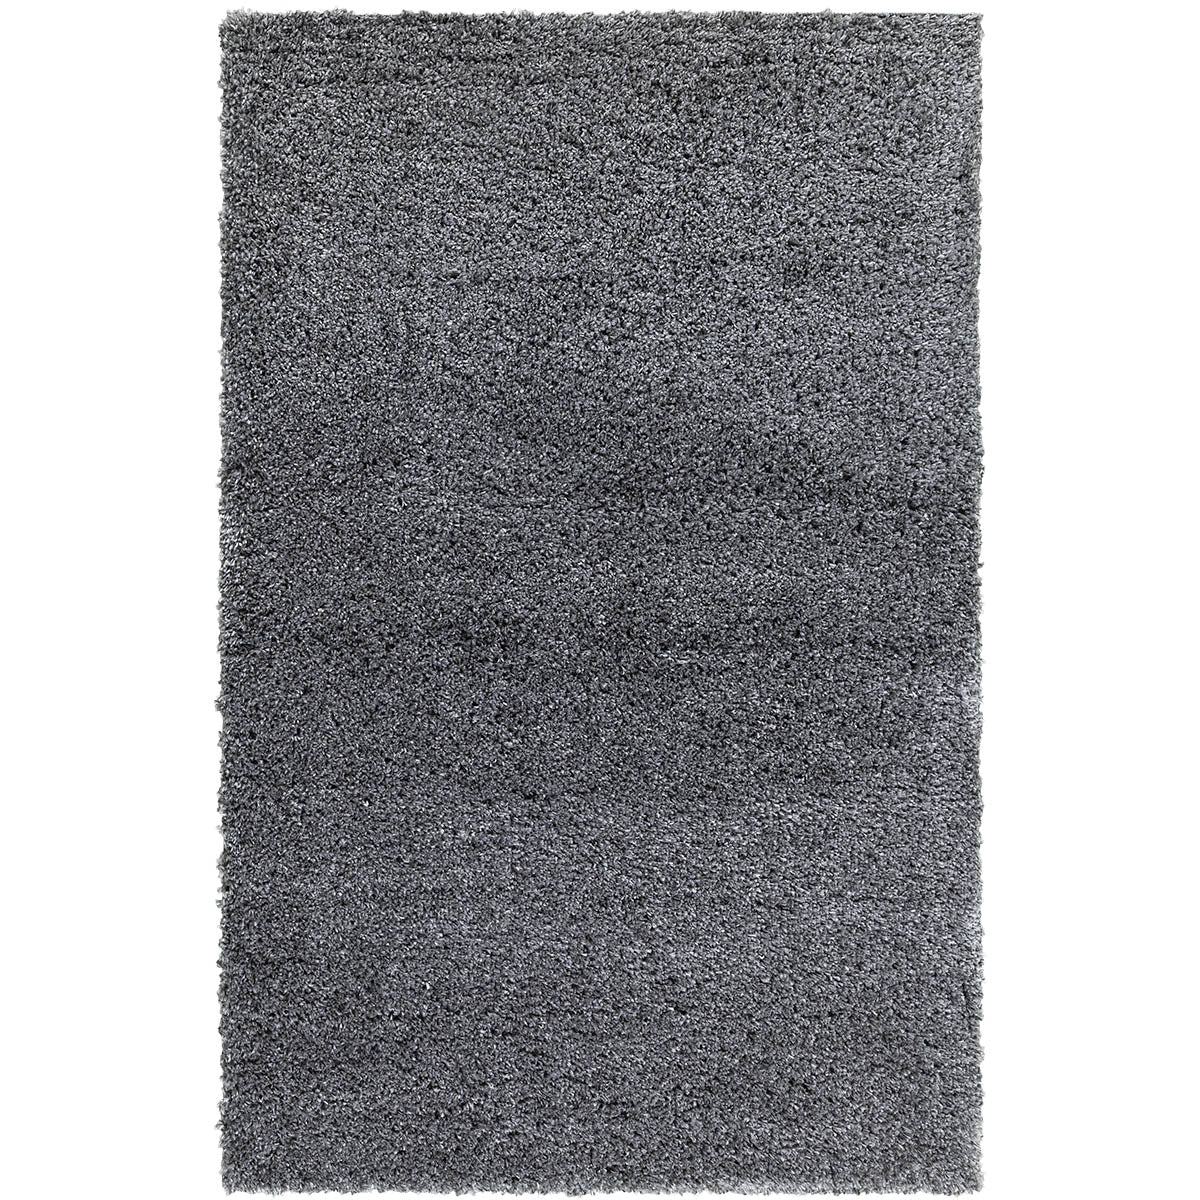 שטיח שאגי קטיפה פארמה 02 אפור כהה | השטיח האדום